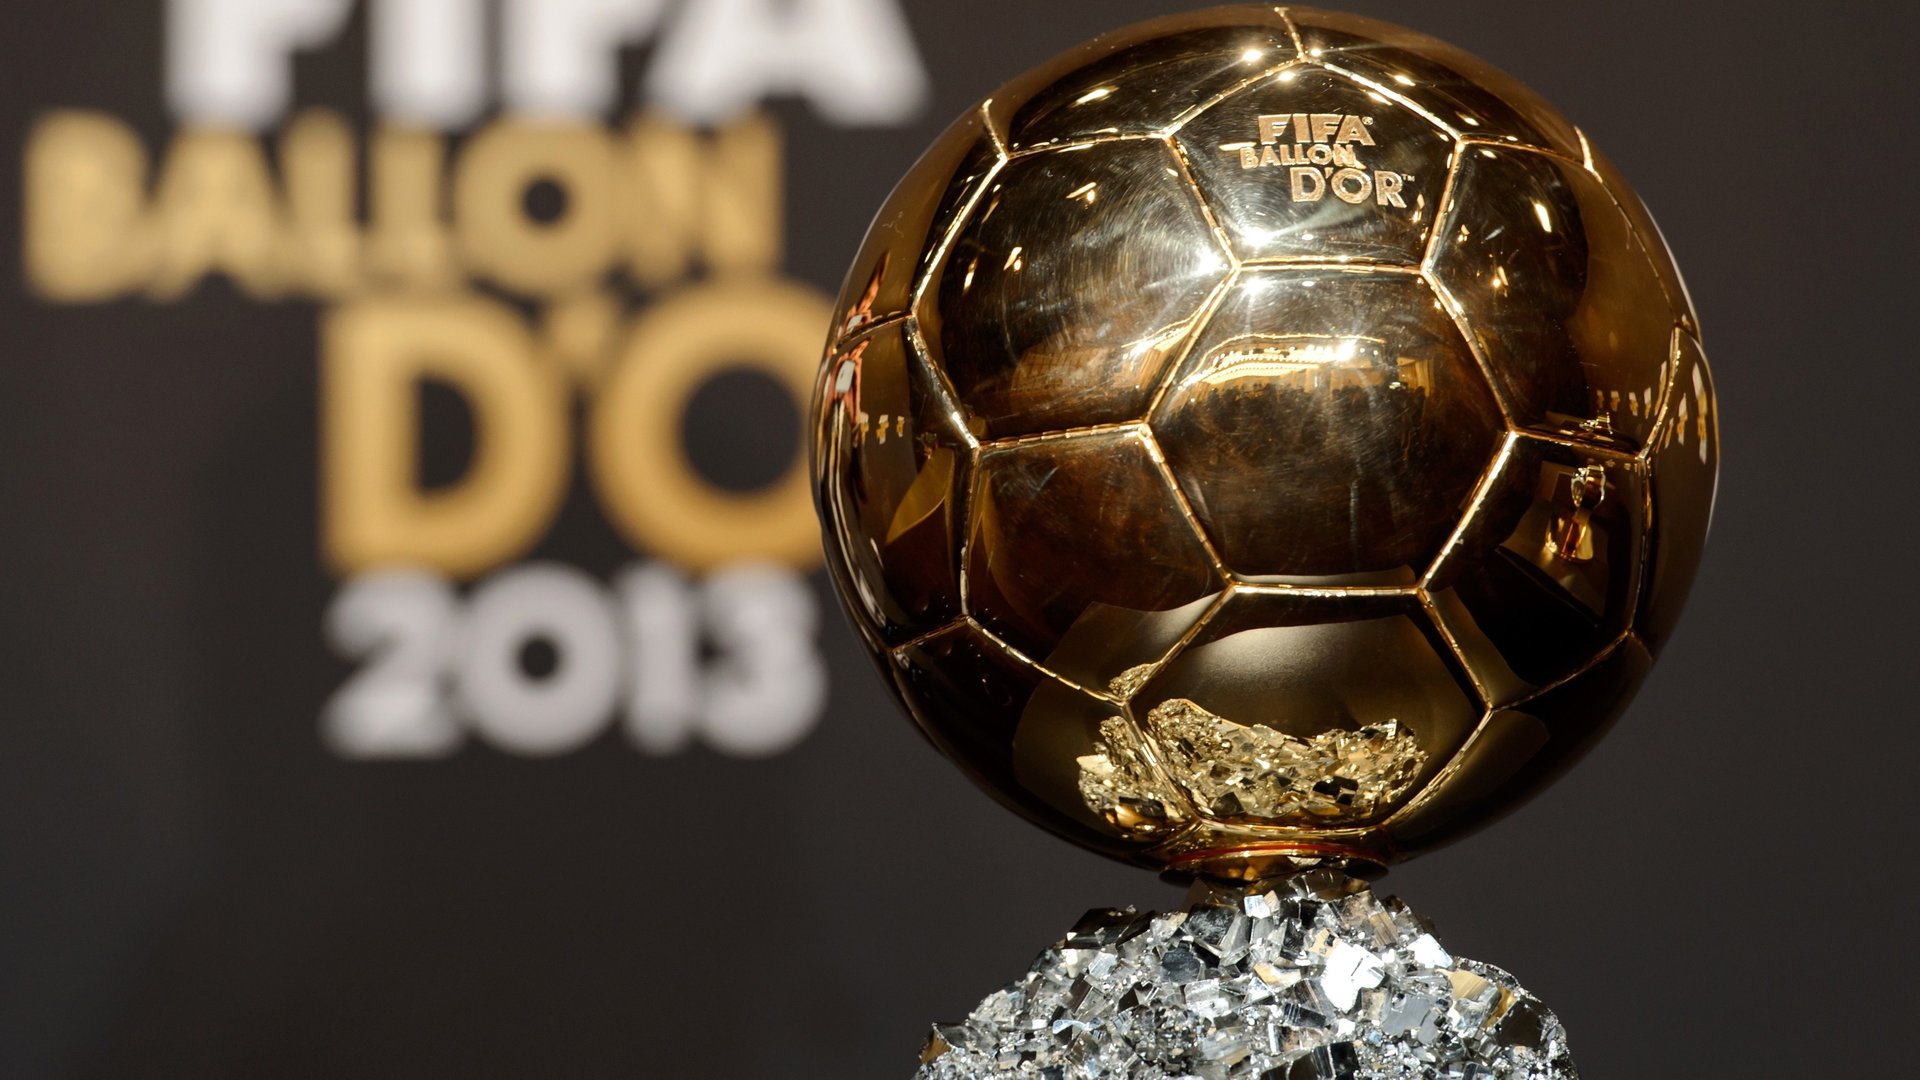 FIFA Ballon d'Or trophy